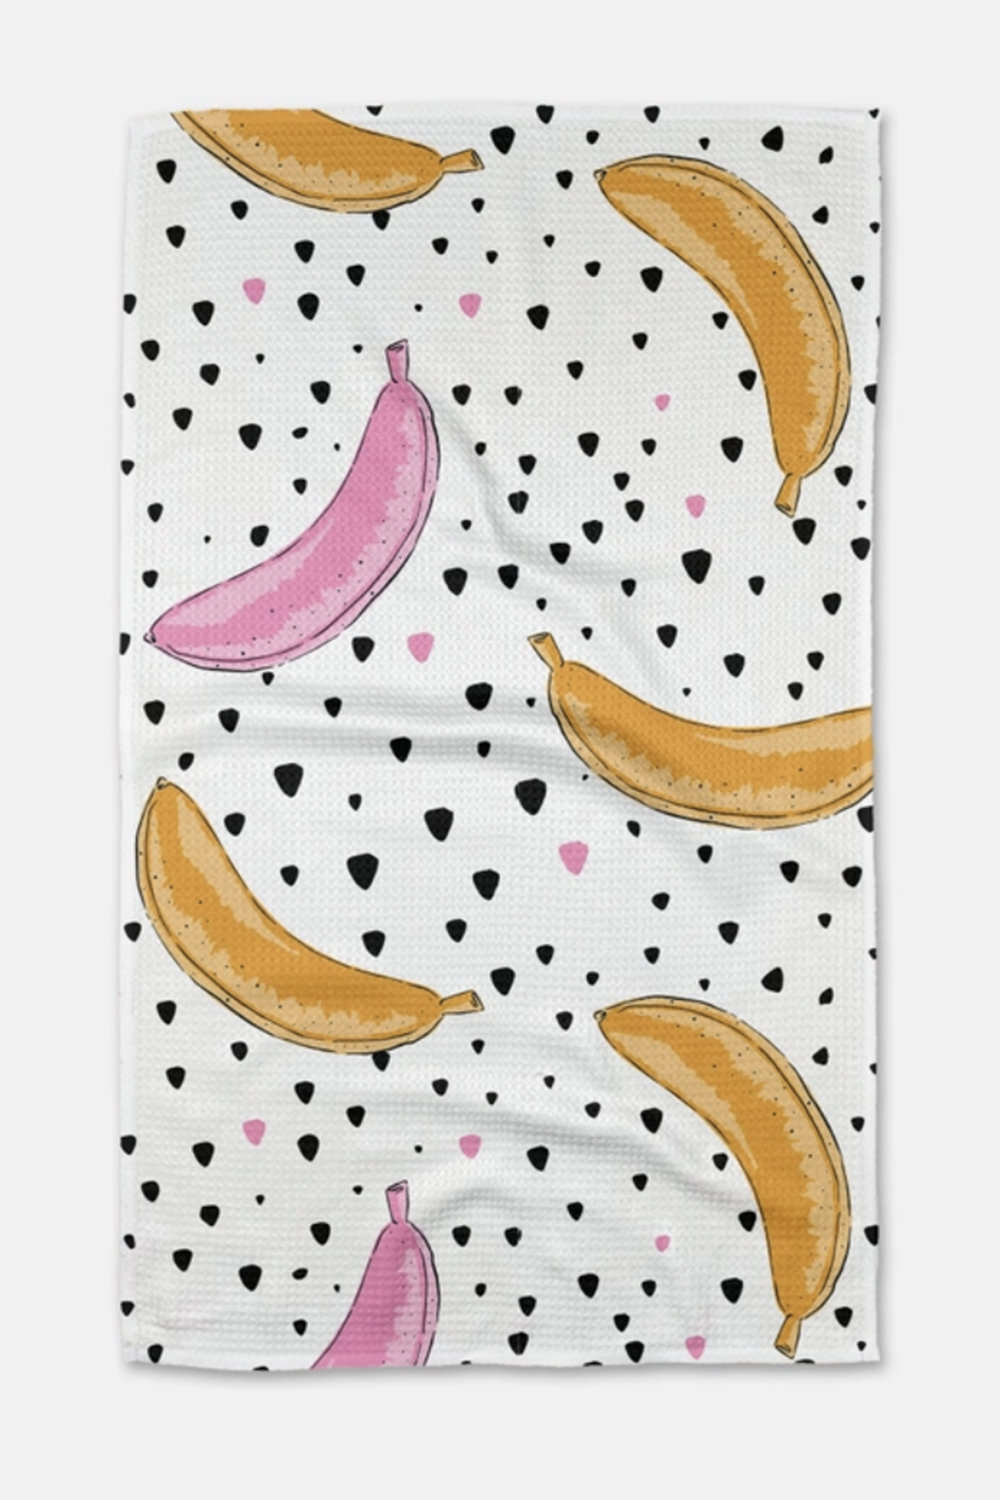 Geometry Kitchen Tea Towel - Color Pop Bananas